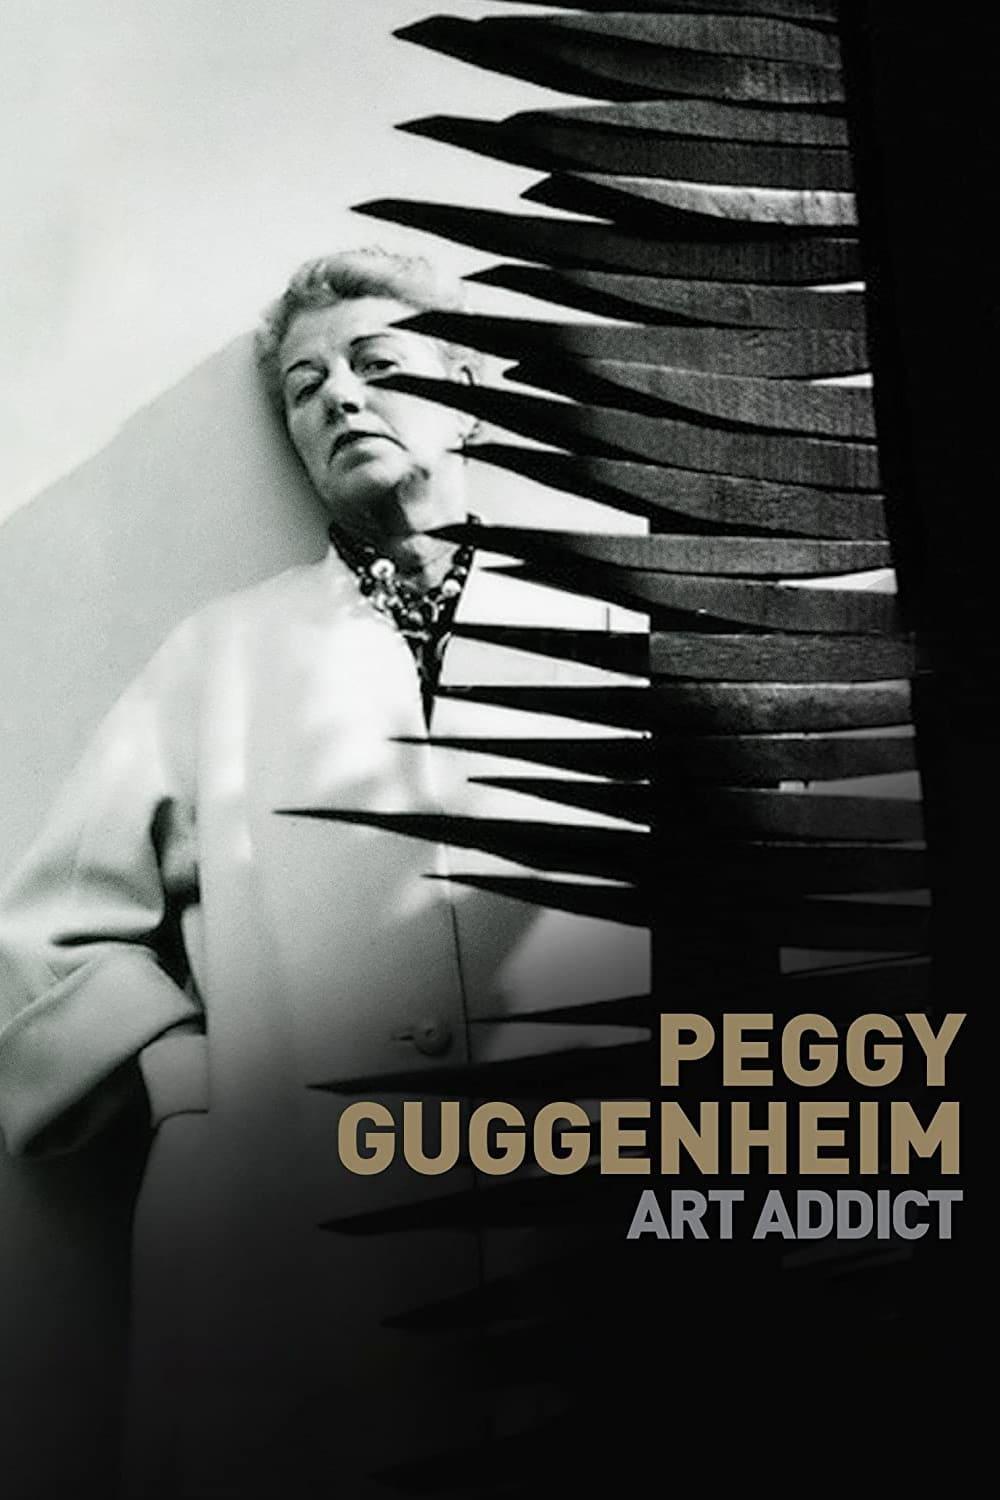 Peggy Guggenheim: Art Addict poster